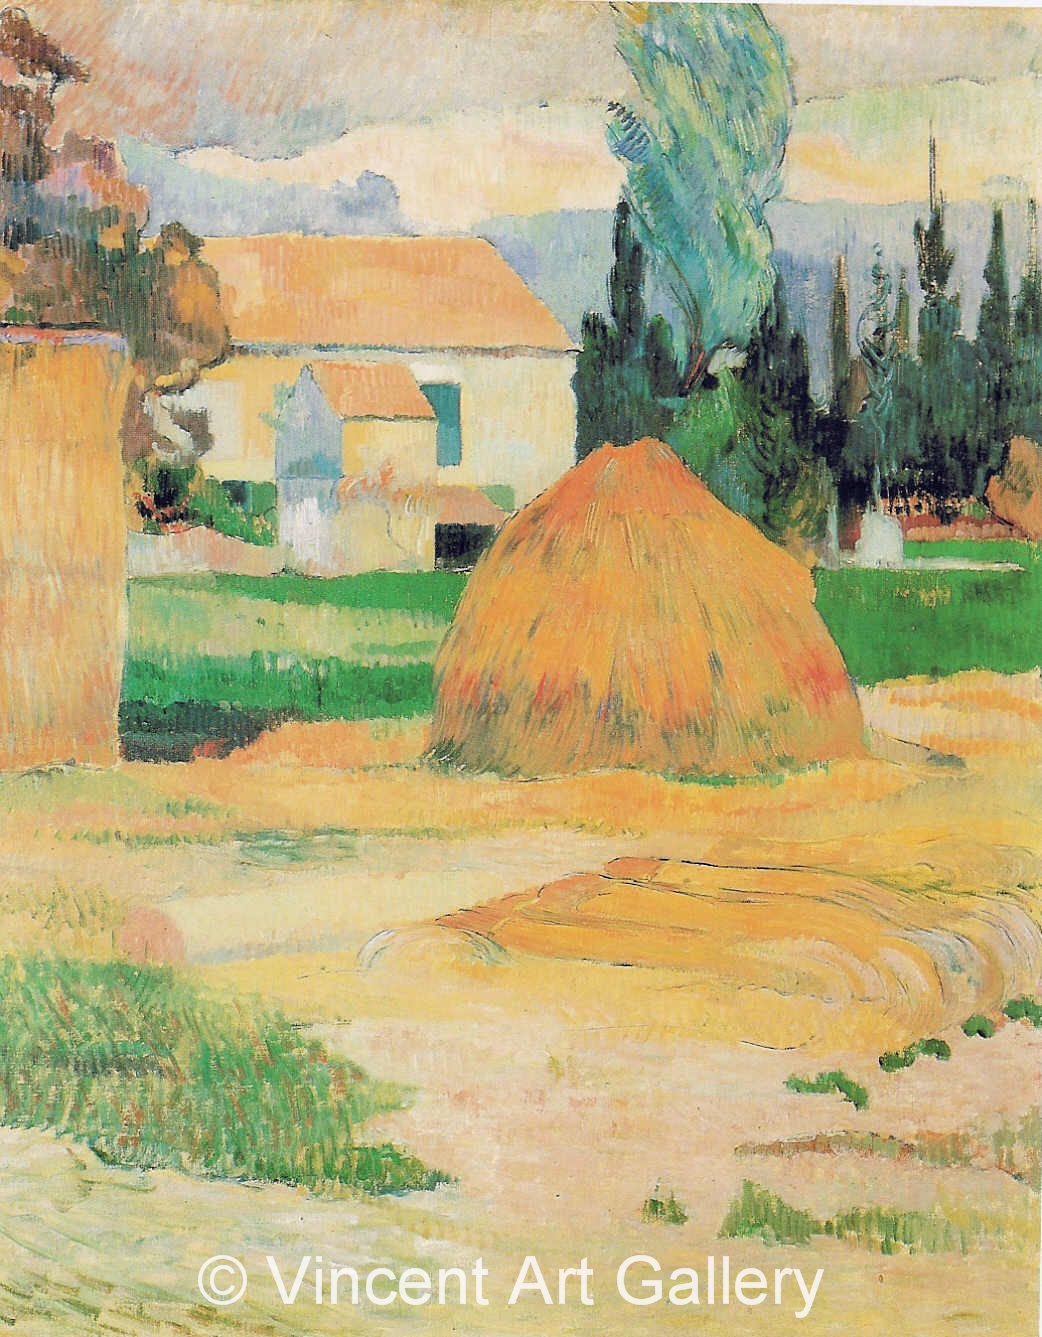 A3610, GAUGUIN, Farm at Arles, 1888